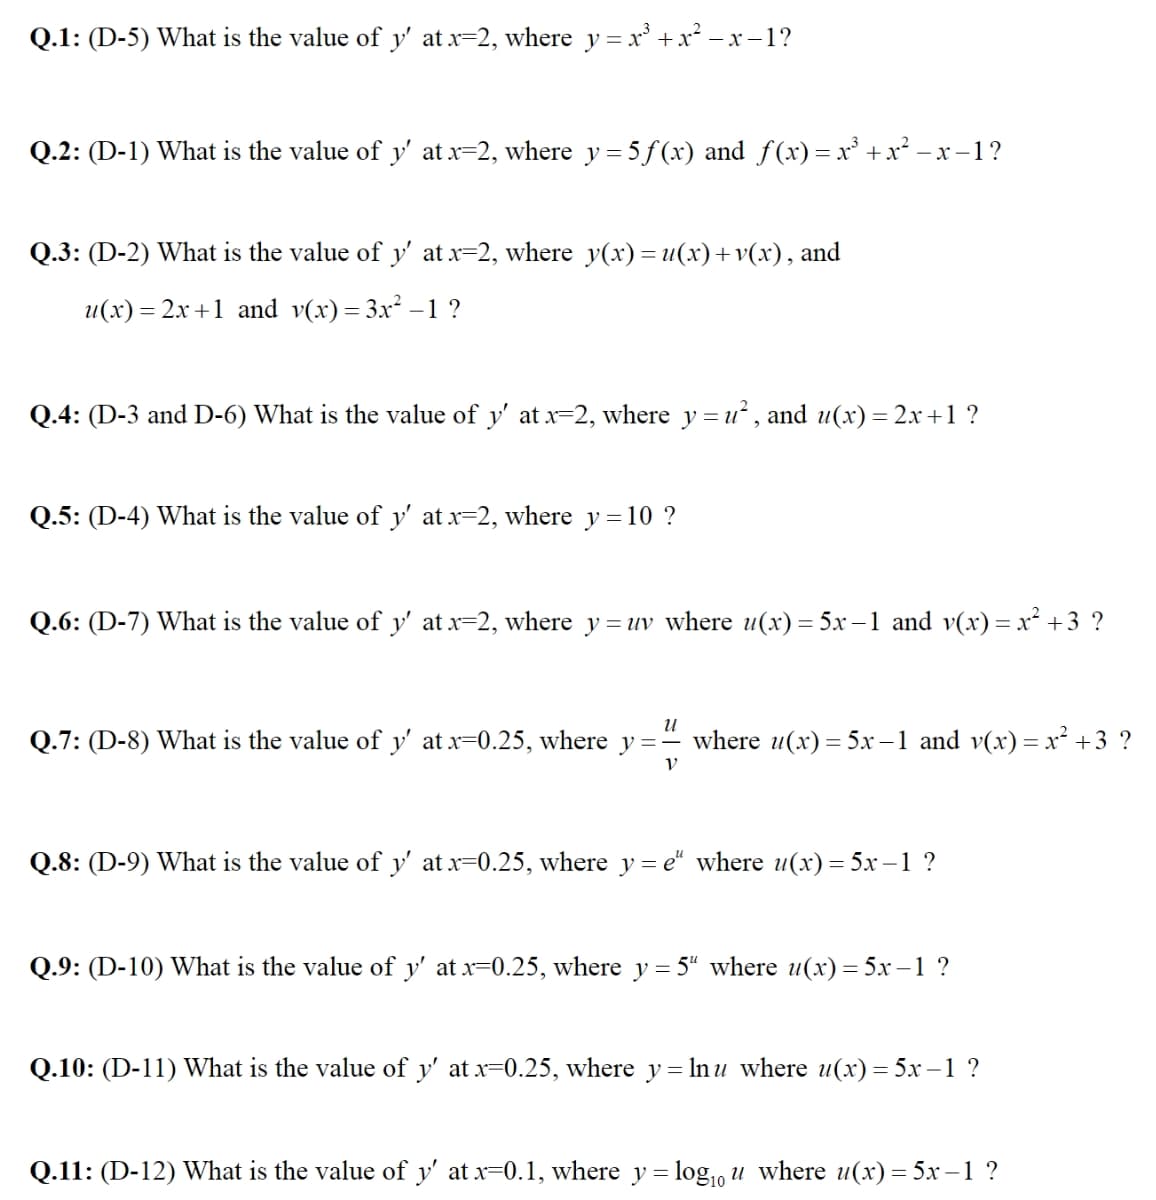 Q.1: (D-5) What is the value of y' at x=2, where y = x³ + x² −x−1?
Q.2: (D-1) What is the value of y' at x=2, where y = 5 f(x) and ƒ(x)= x³ + x² −x−1?
Q.3: (D-2) What is the value of y' at x=2, where y(x) = u(x)+v(x), and
u(x)=2x+1 and v(x) = 3x² -1 ?
Q.4: (D-3 and D-6) What is the value of y' at x=2, where y=u², and u(x) = 2x+1 ?
Q.5: (D-4) What is the value of y' at x=2, where y=10 ?
Q.6: (D-7) What is the value of y' at x=2, where y= uv where u(x) = 5x−1 and v(x) = x² +3 ?
U
Q.7: (D-8) What is the value of y' at x=0.25, where y=- where u(x) = 5x−1 and v(x) = x² +3 ?
V
Q.8: (D-9) What is the value of y' at x=0.25, where y=e" where u(x) = 5x-1 ?
Q.9: (D-10) What is the value of y' at x=0.25, where y = 5" where u(x) = 5x-1 ?
Q.10: (D-11) What is the value of y' at x=0.25, where y= ln u where u(x) = 5x-1 ?
Q.11: (D-12) What is the value of y' at x=0.1, where y = log₁0 u where u(x) = 5x-1 ?